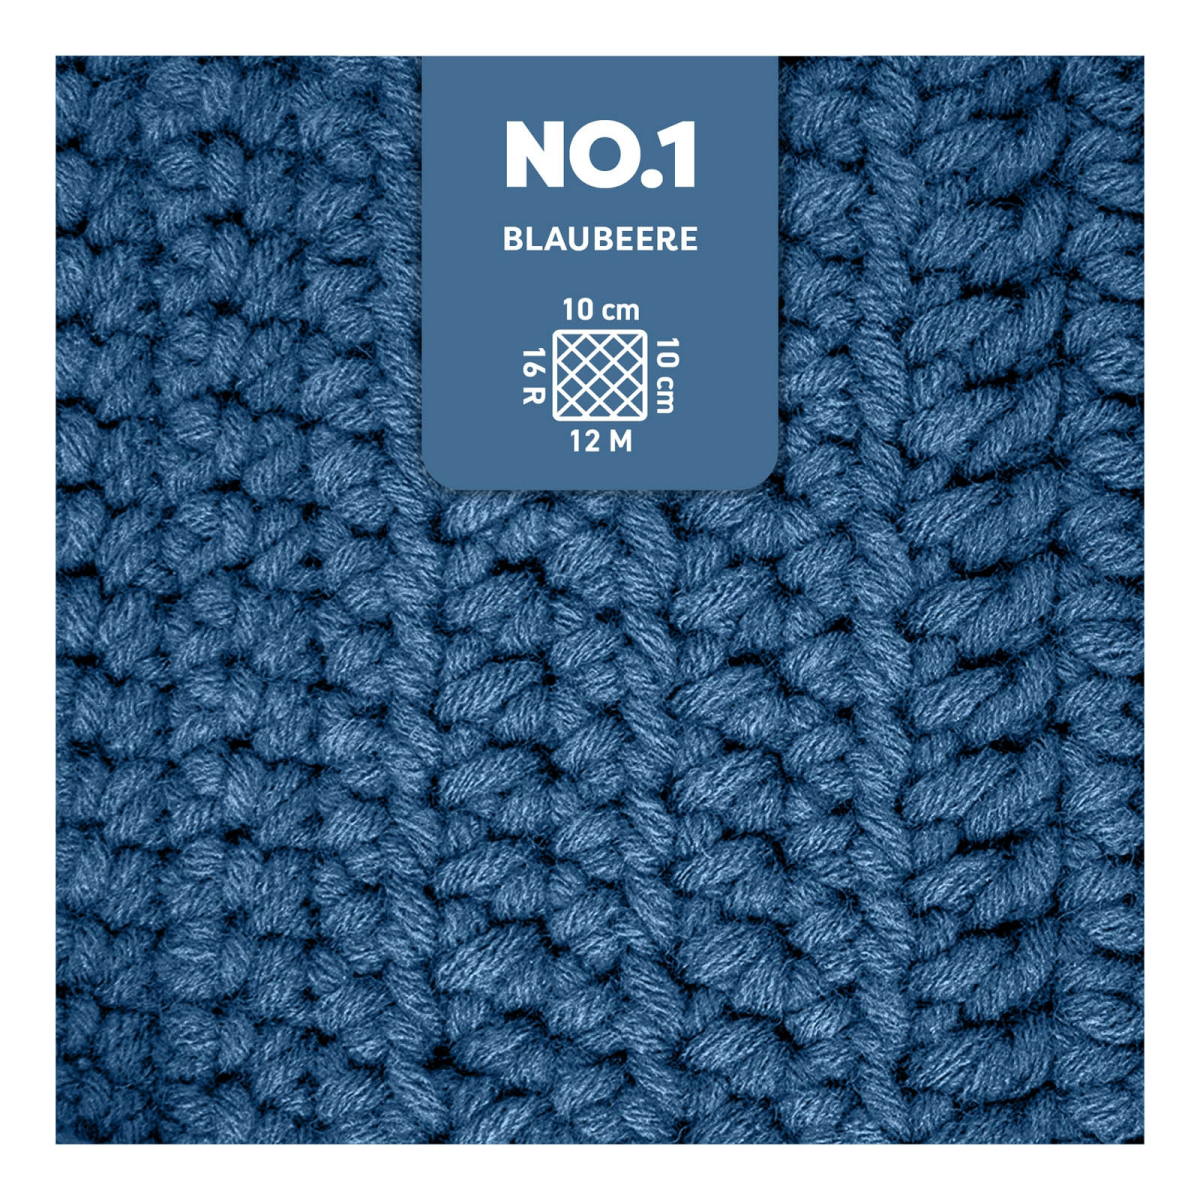 Laine Chenille 6 - Lammy yarns / La Fée Crochet COULEUR CHENILLE 6 005